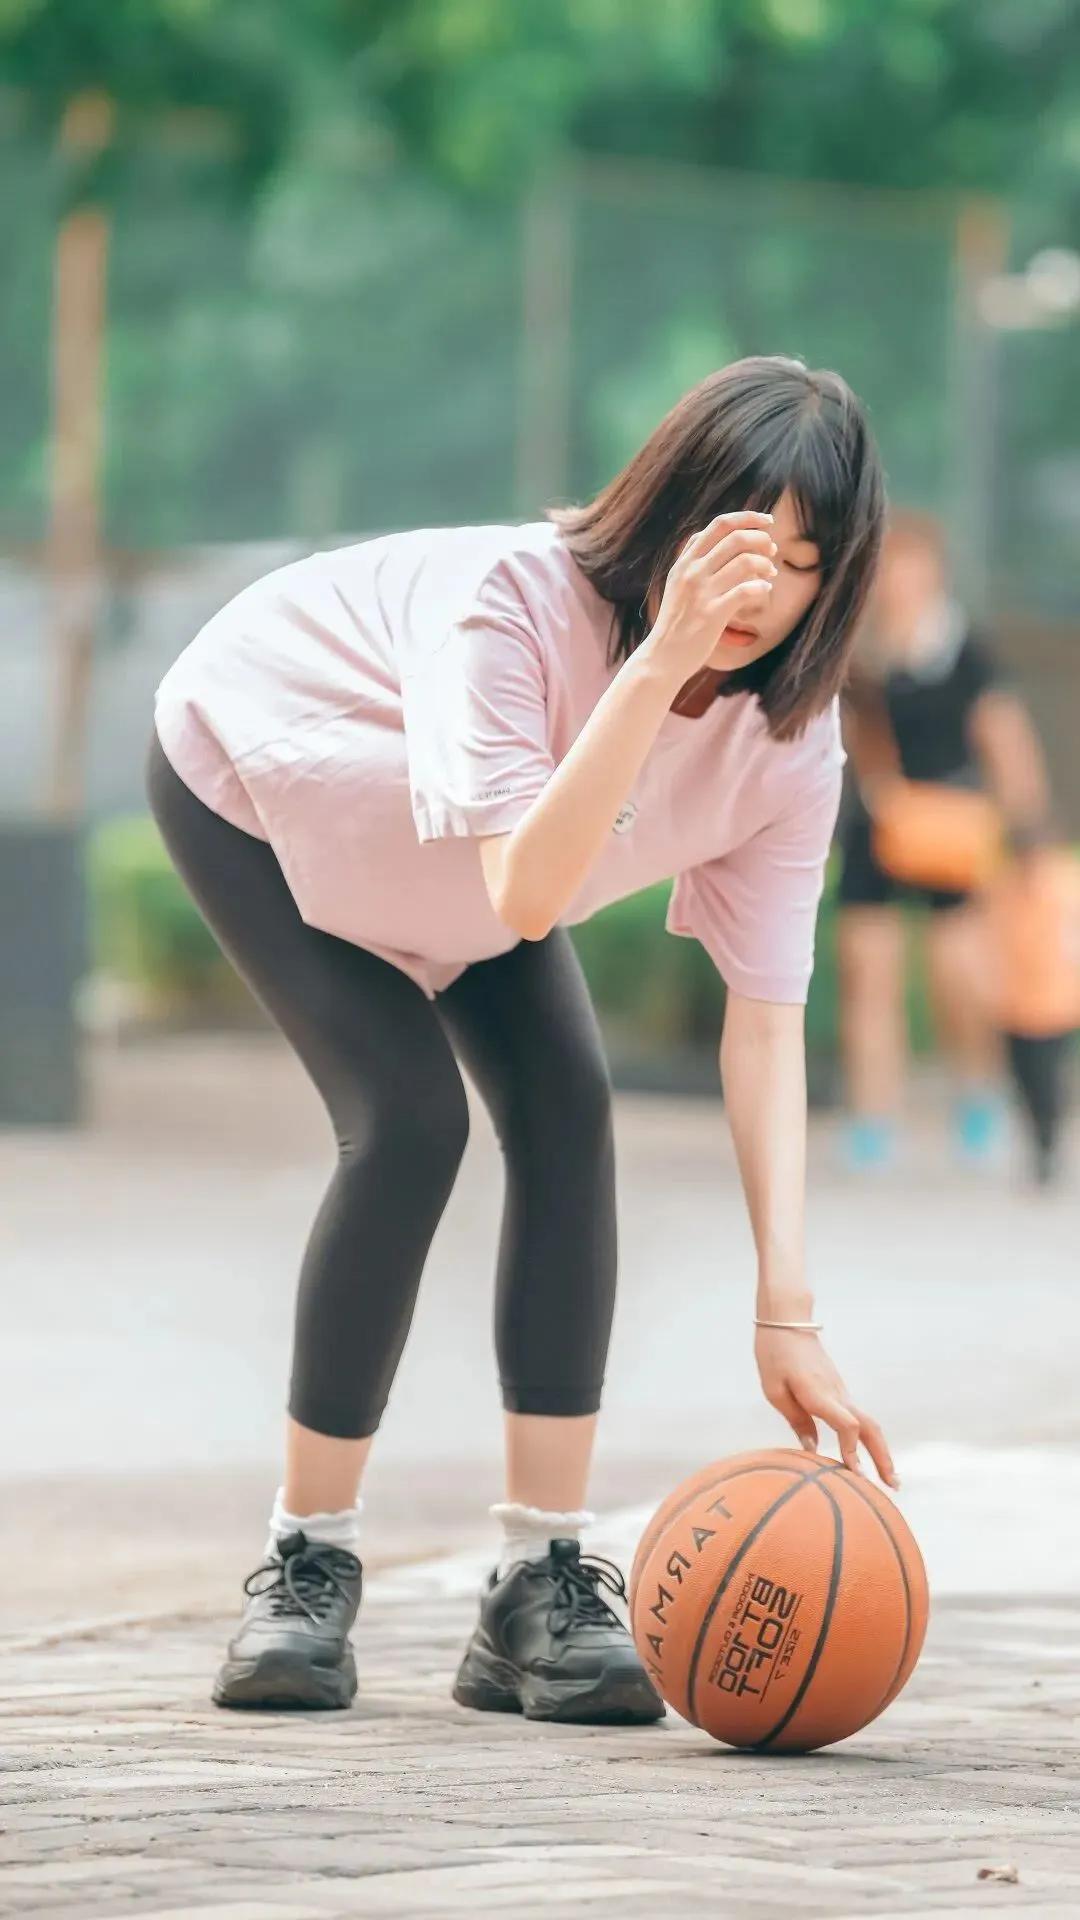 美女打篮球壁纸 | 打篮球女生照片高清写真图片